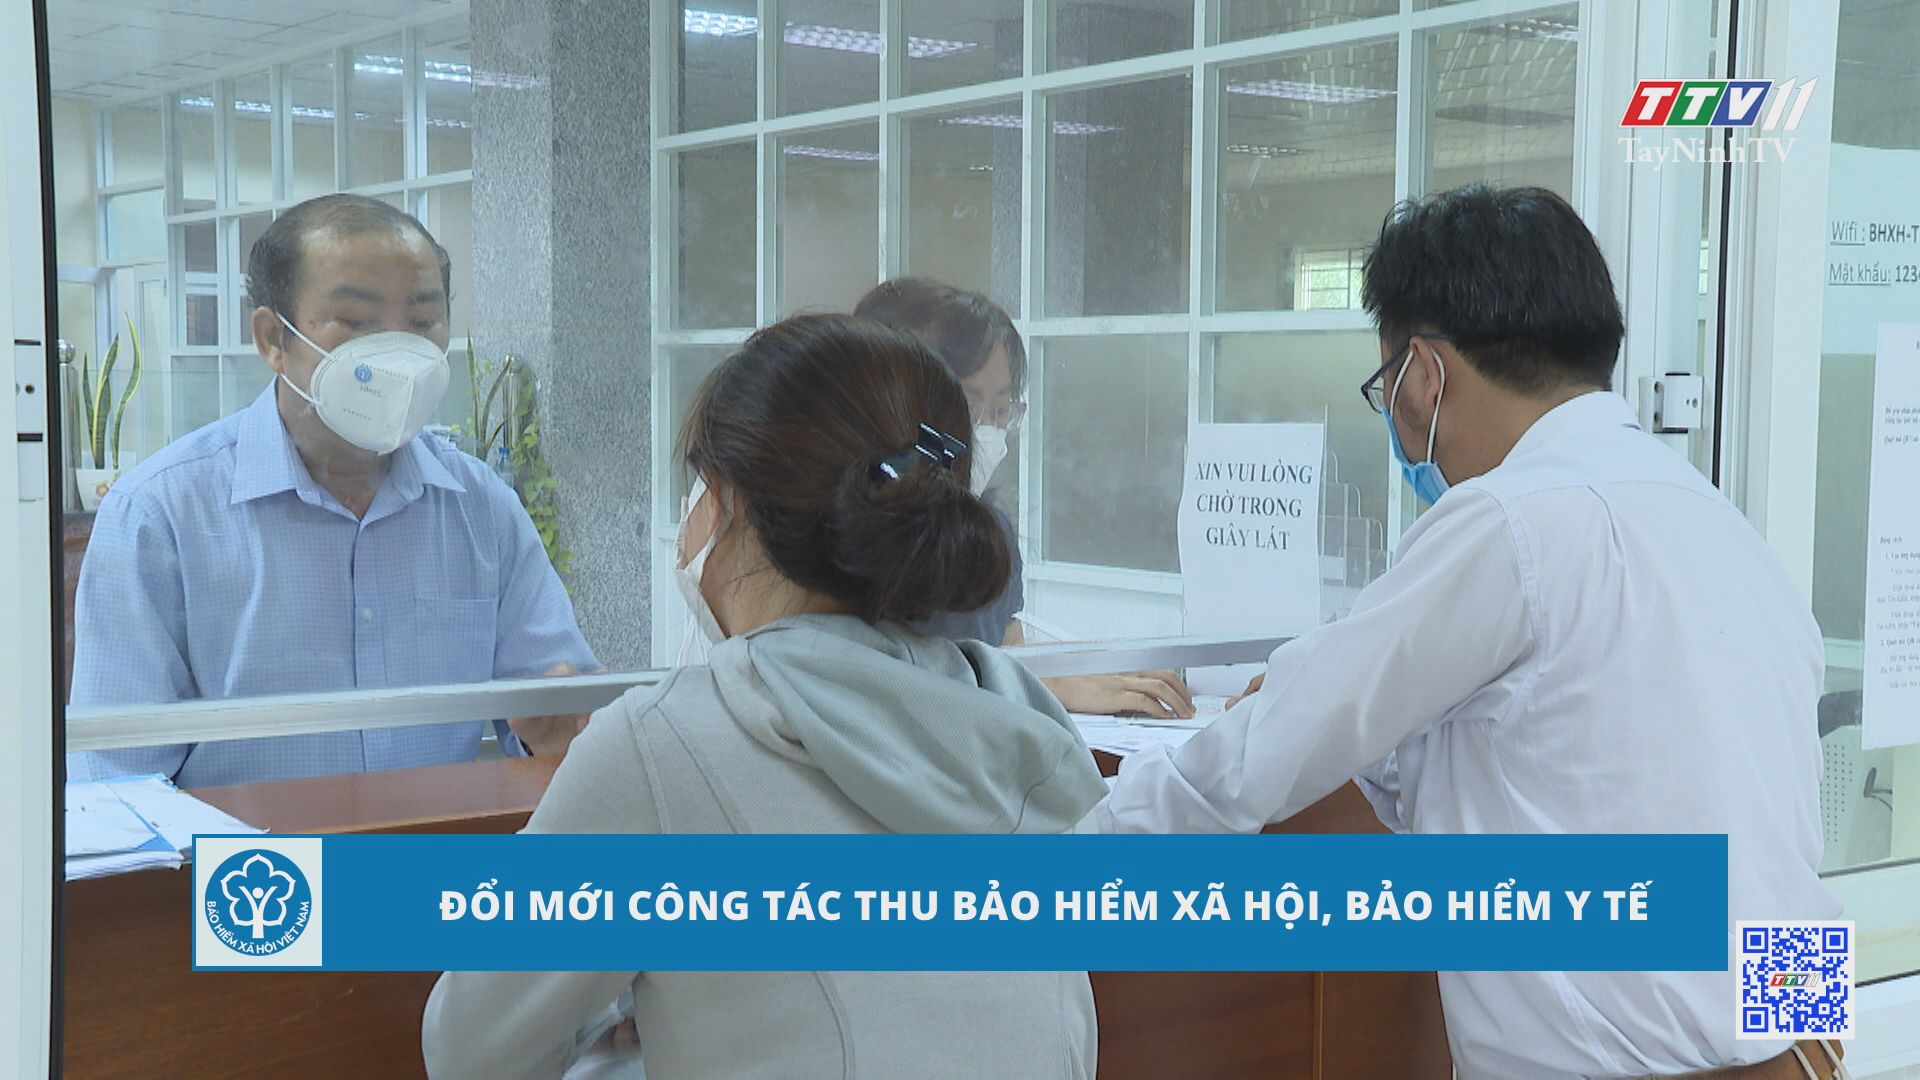 Đổi mới công tác thu bảo hiểm xã hội, bảo hiểm y tế | Bảo hiểm xã hội Tây Ninh | TayNinhTV